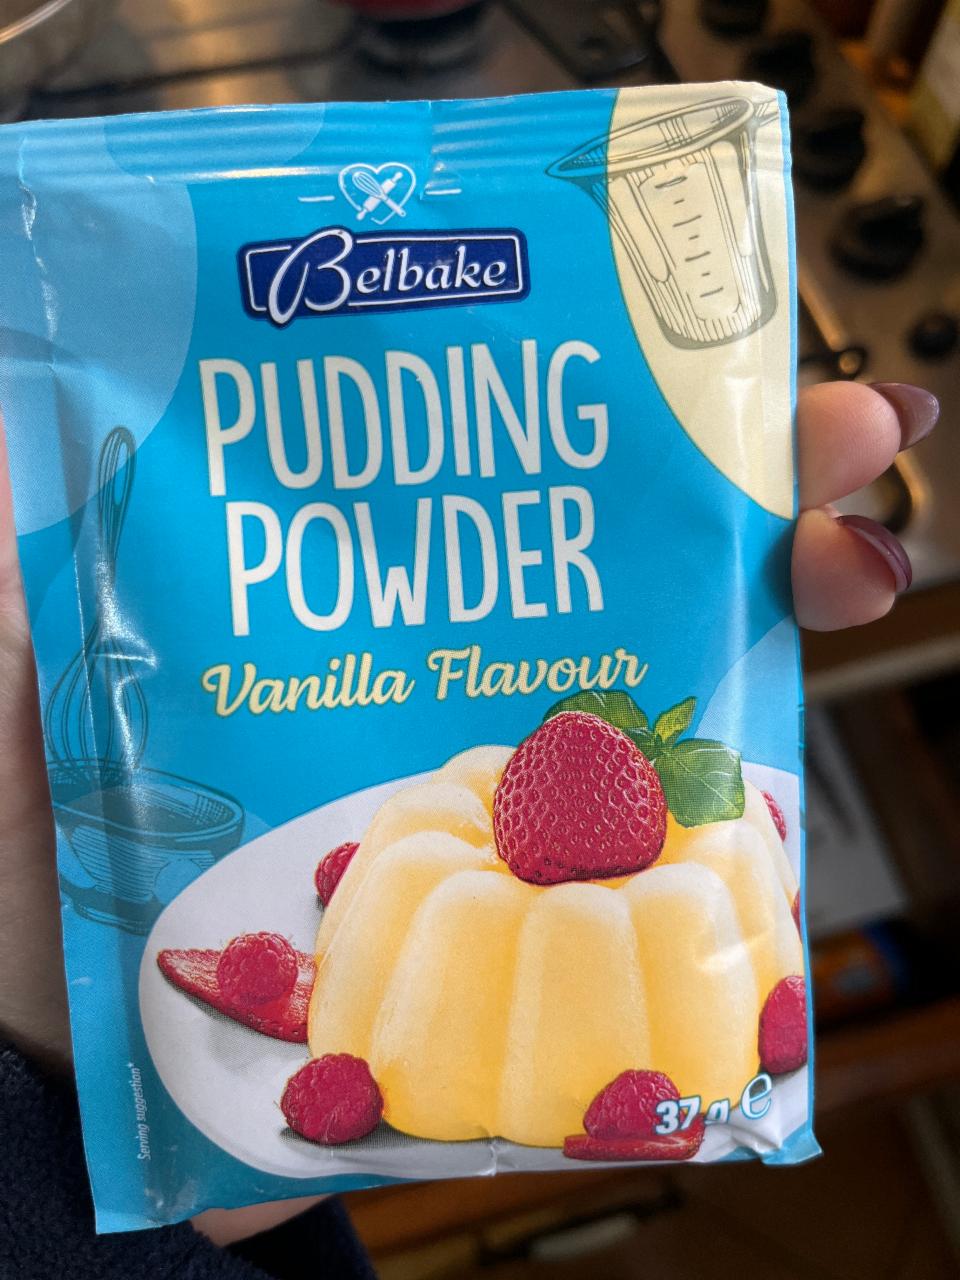 Фото - Пудинг быстрого приготовления ванильный Pudding Powder Vanilla Belbake